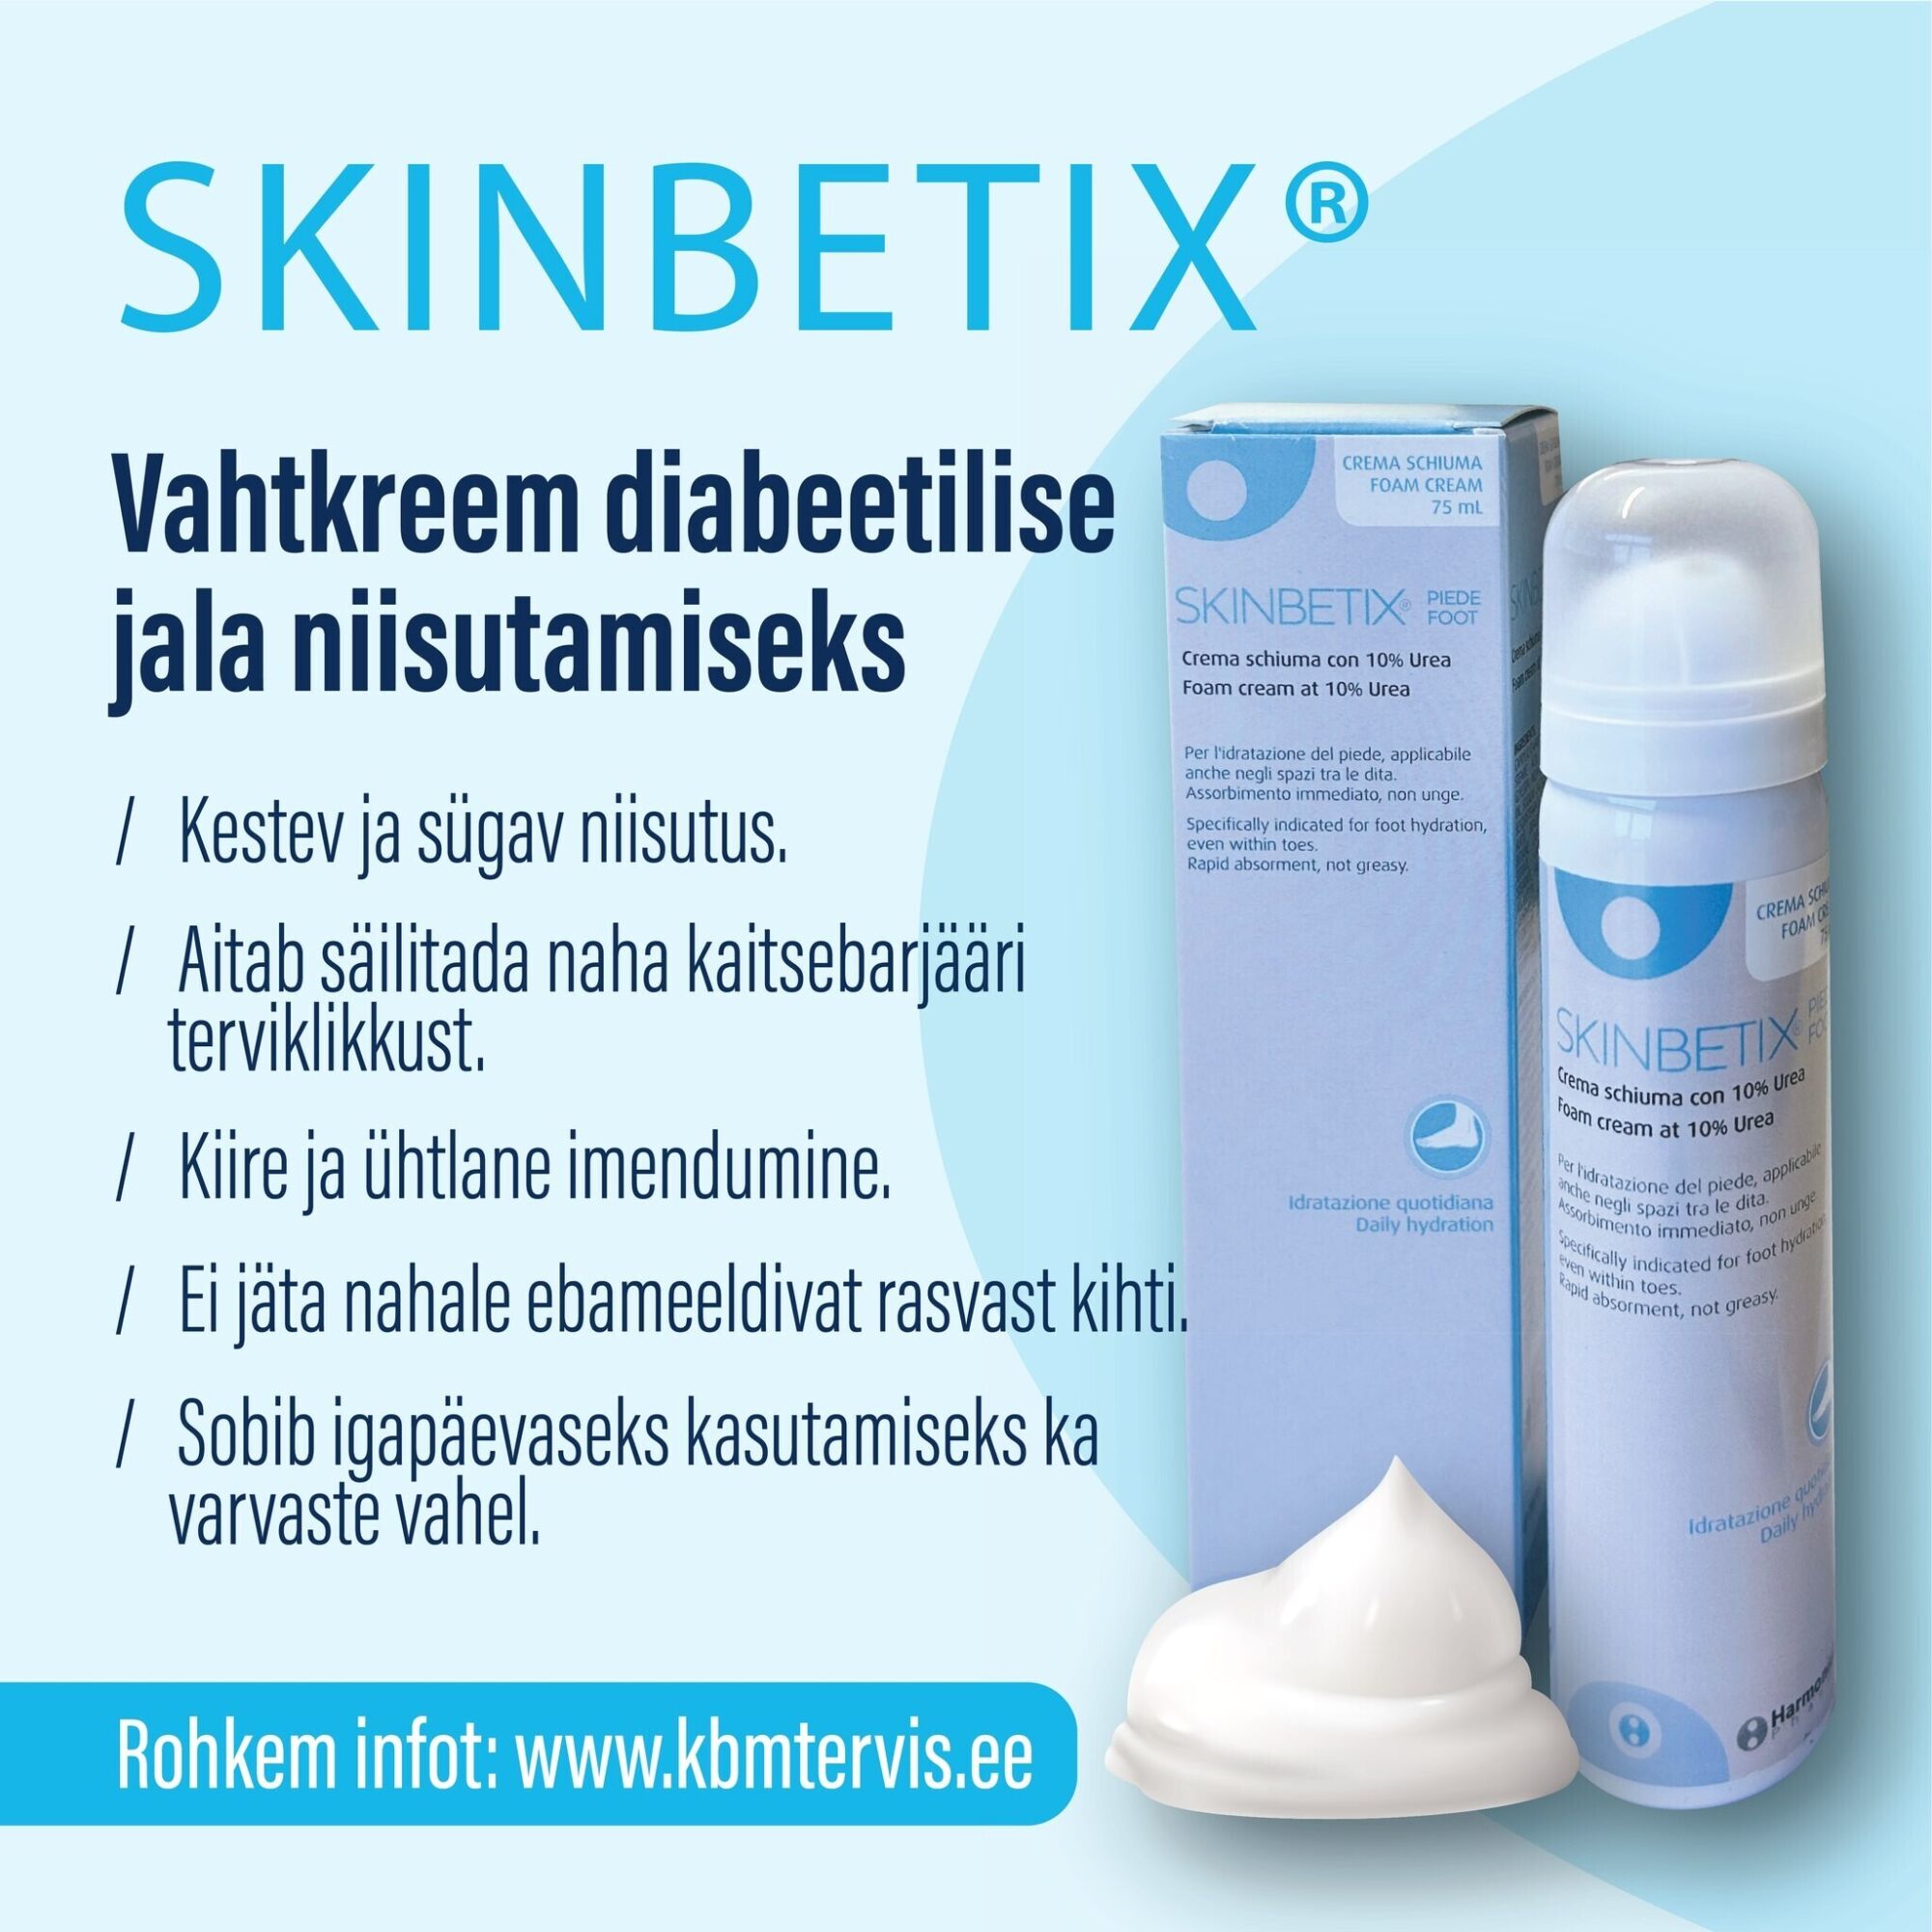 SkinBetix